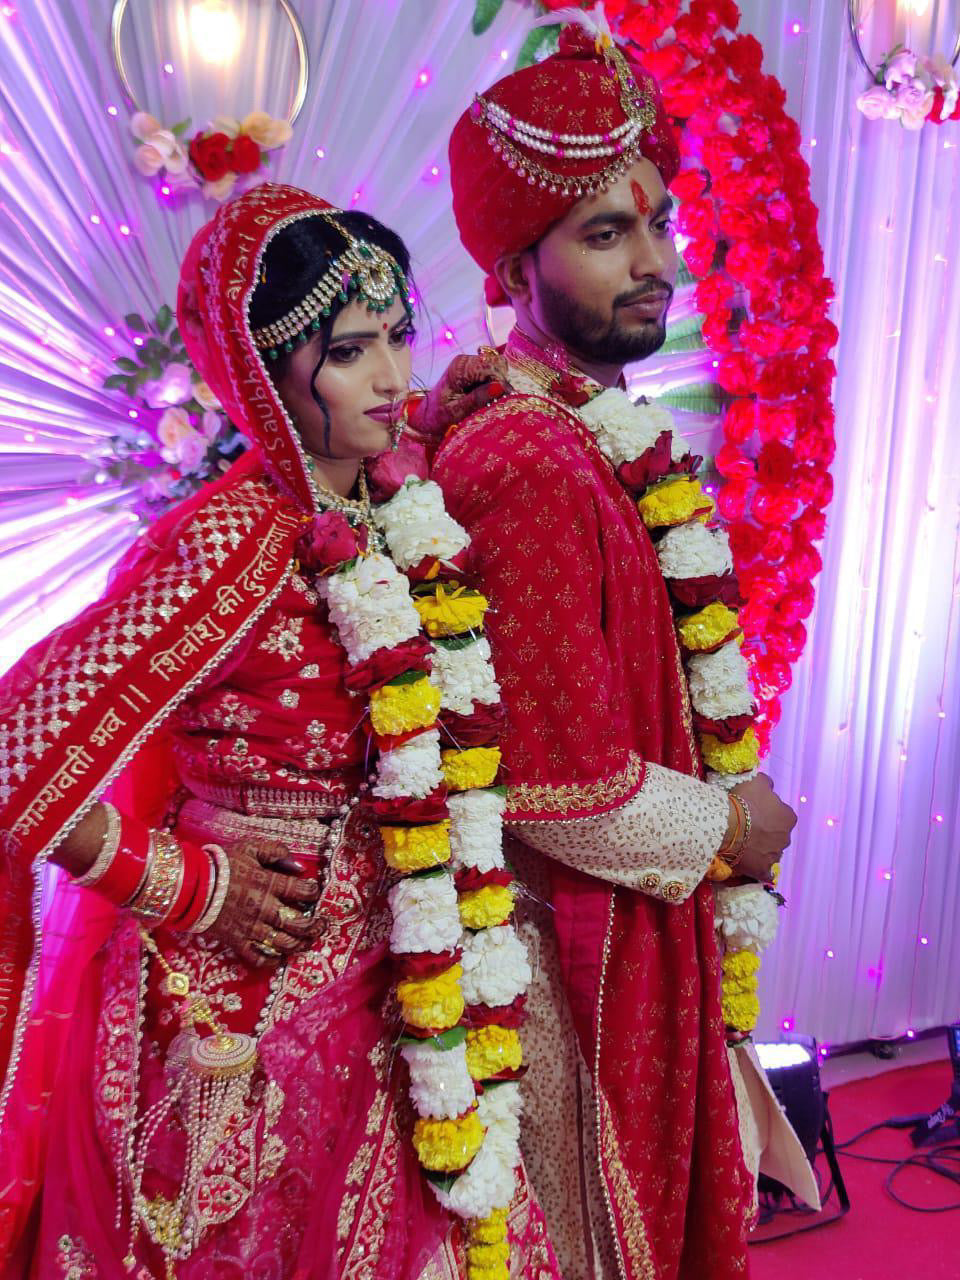 Customised Bridal Dupatta! - Sada saubhagyavati bhava bridal dupatta personalised with bride groom name - Wedding Special